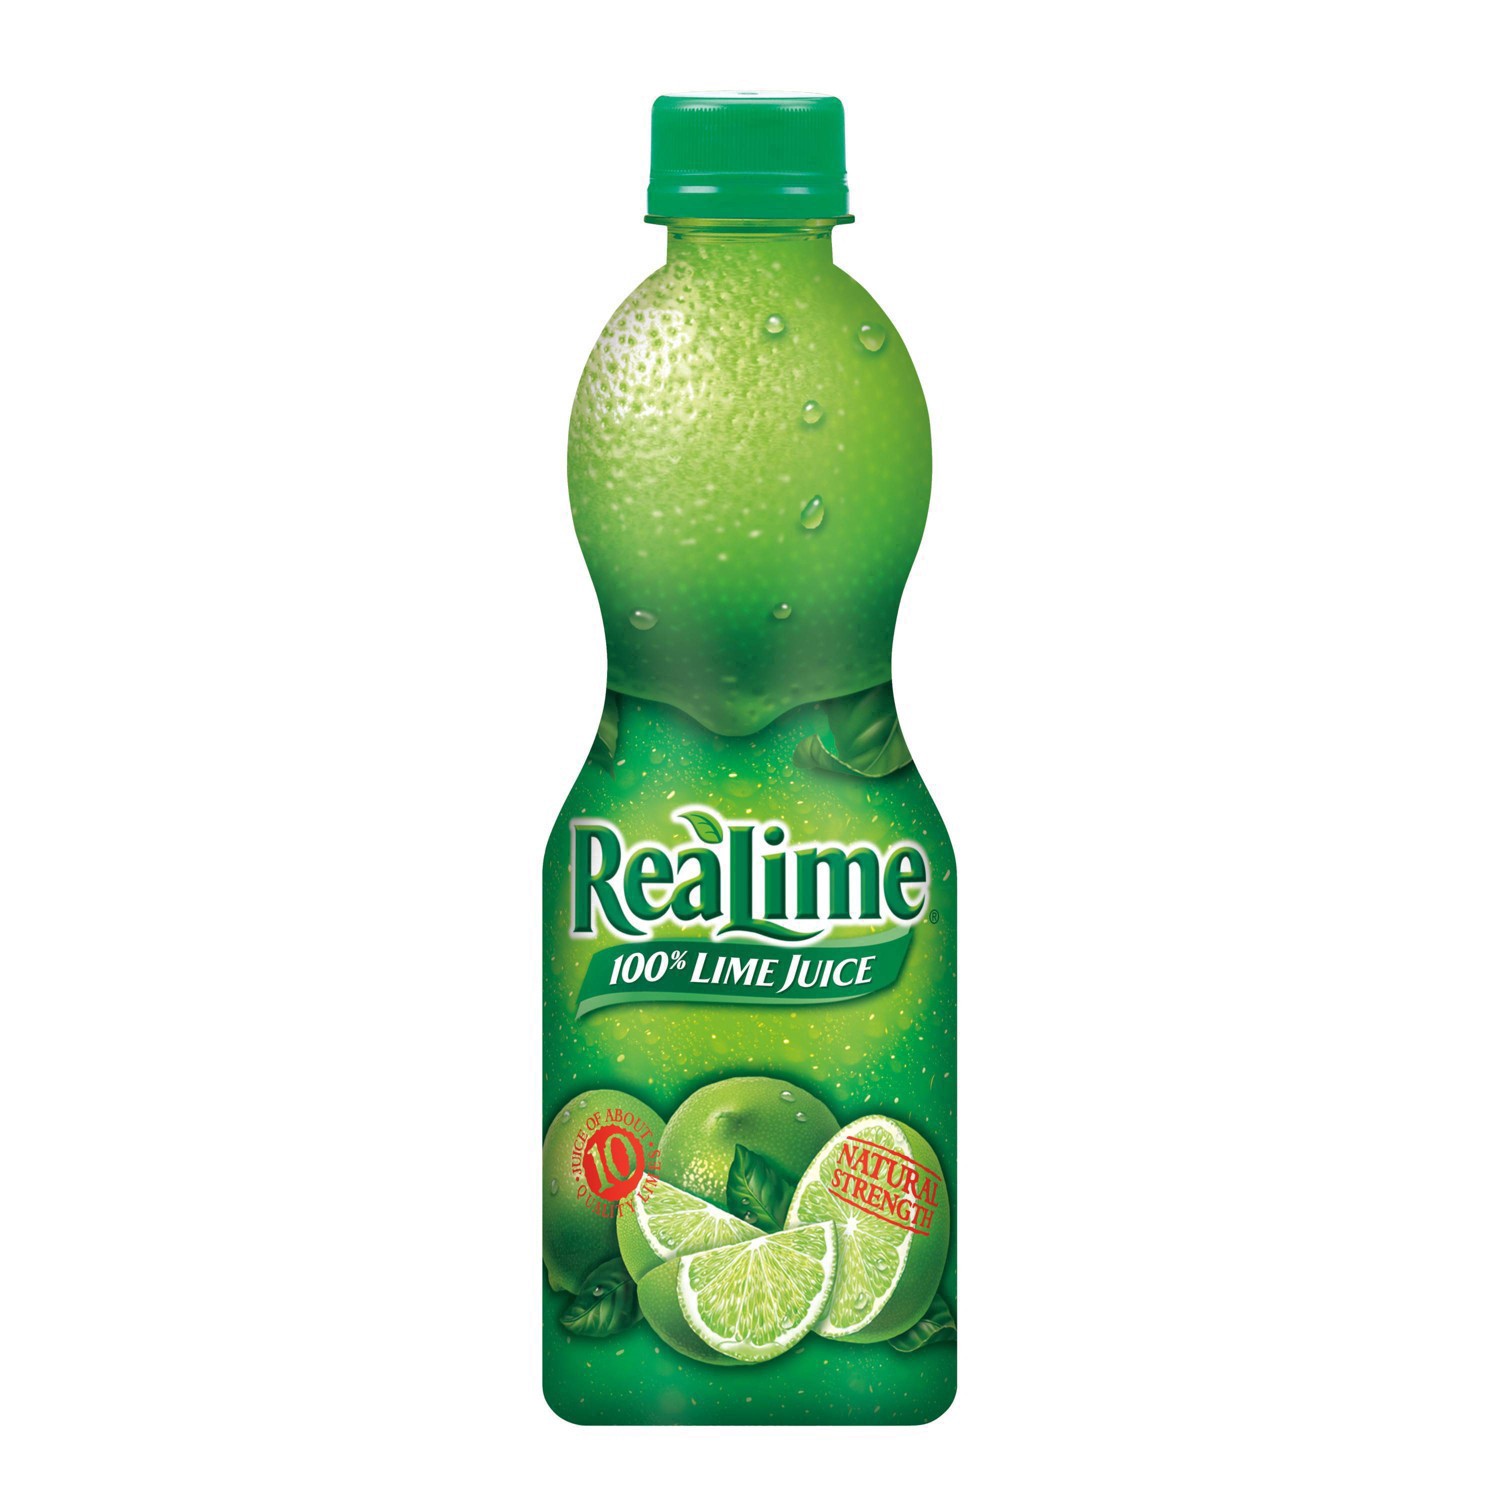 slide 17 of 68, ReaLime 100% Lime Juice Bottle, 15 fl oz